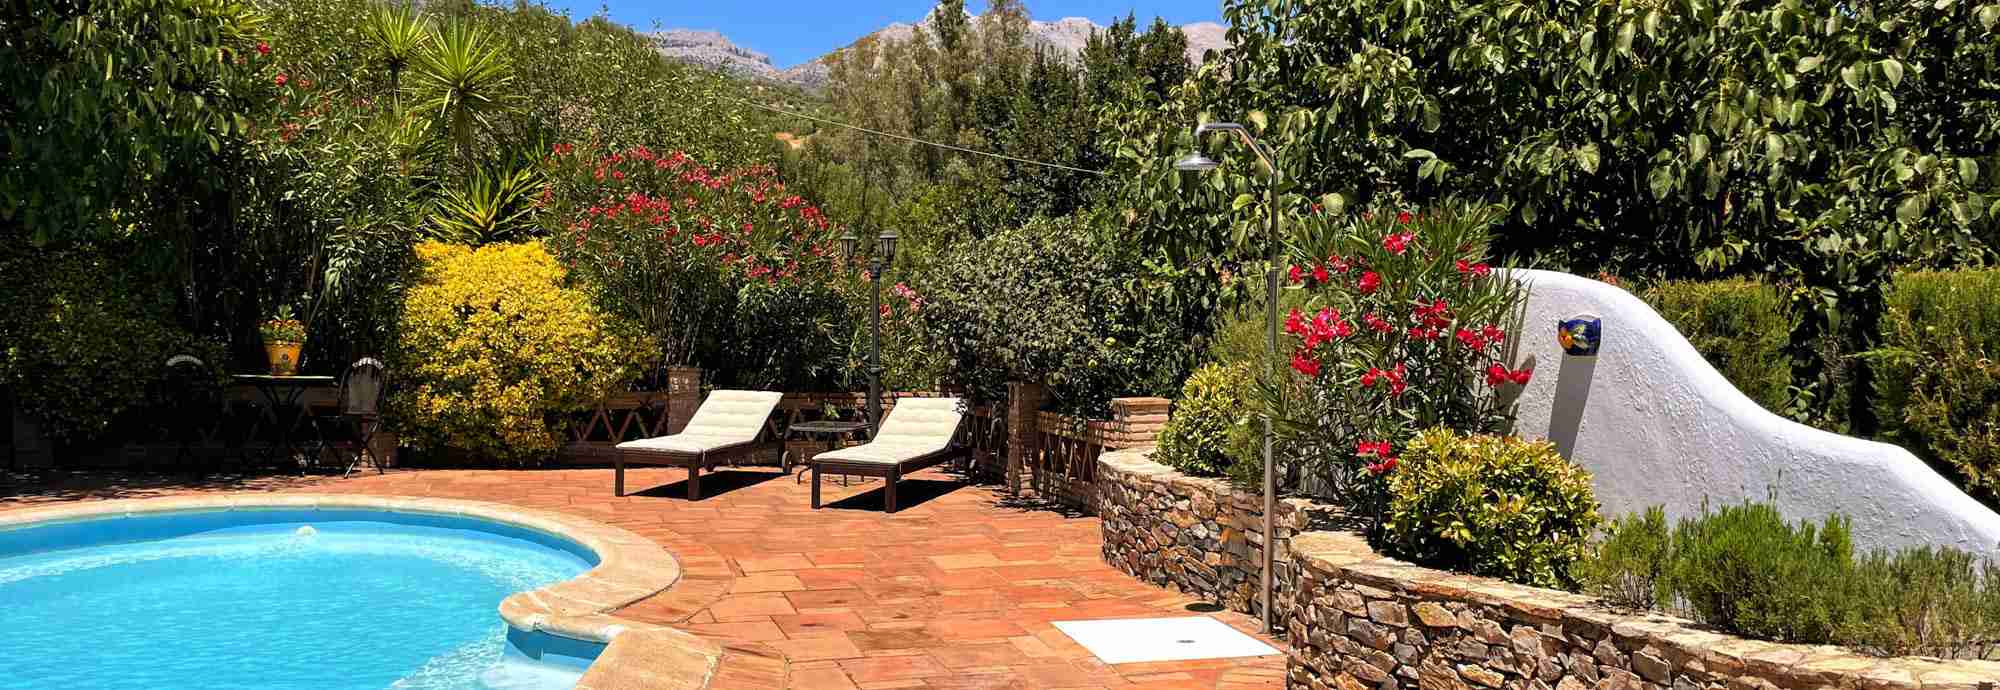 Un lugar ideal para unas vacaciones relajantes en el corazón de la Serranía de Ronda